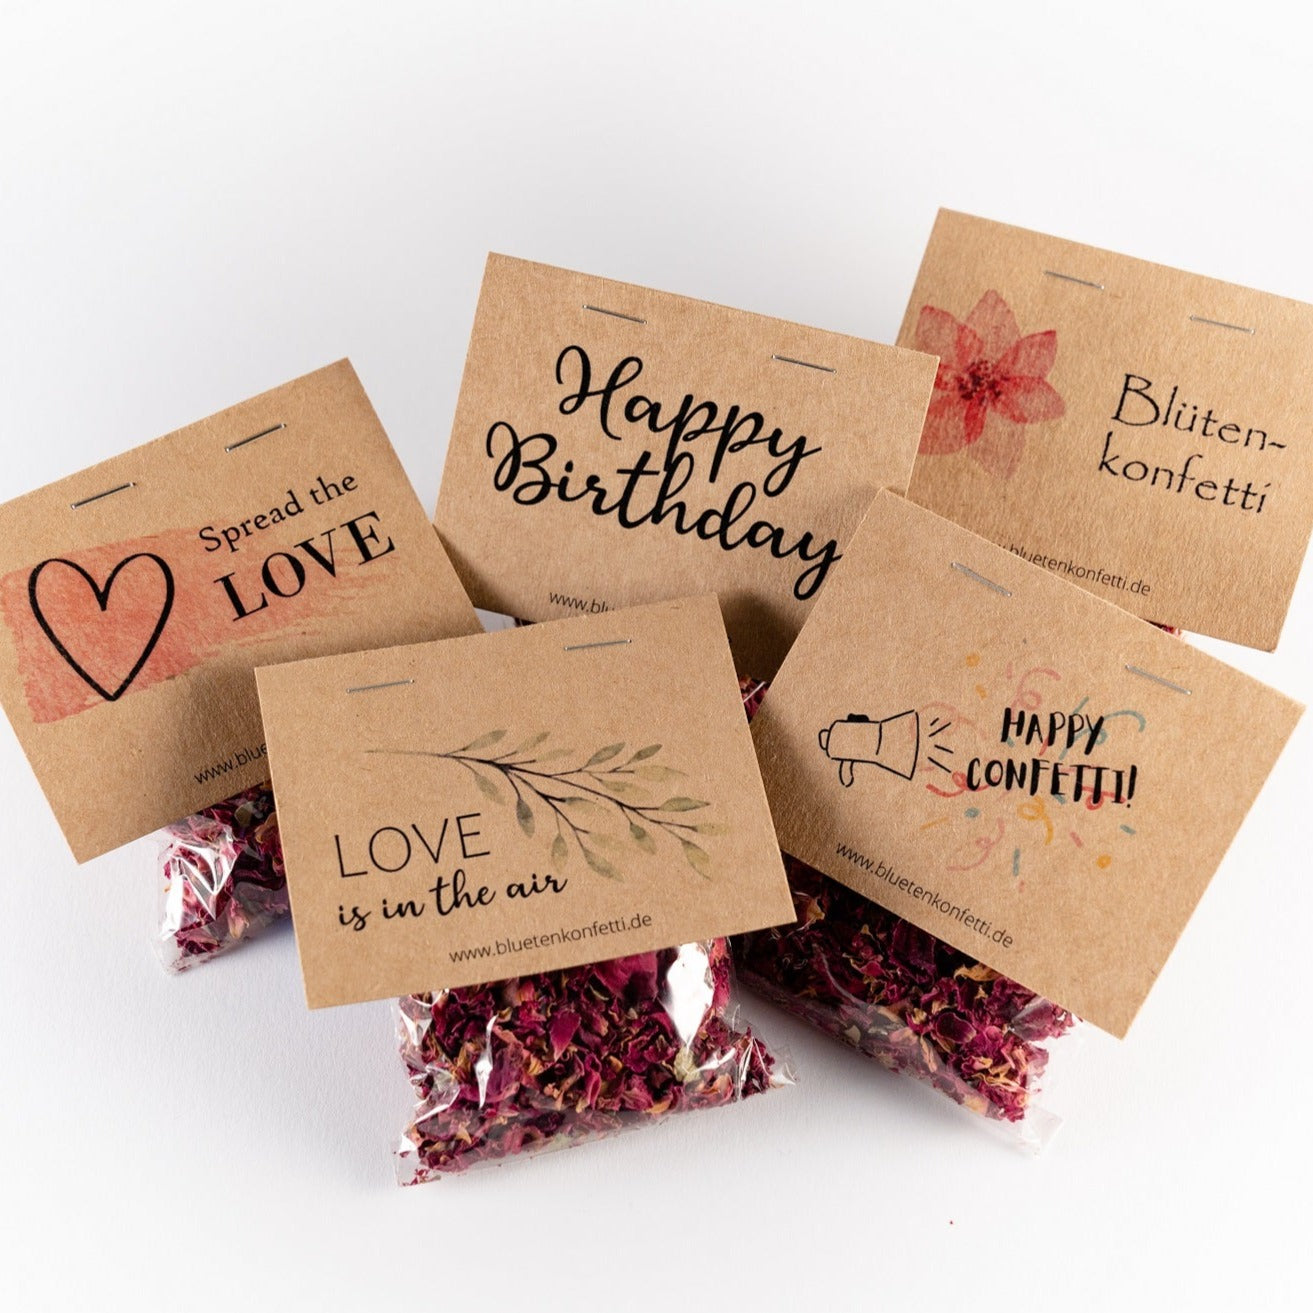 5 Päckchen Blütenkonfetti "Red Romance" in Päckchen mit verschiedenen Layouts